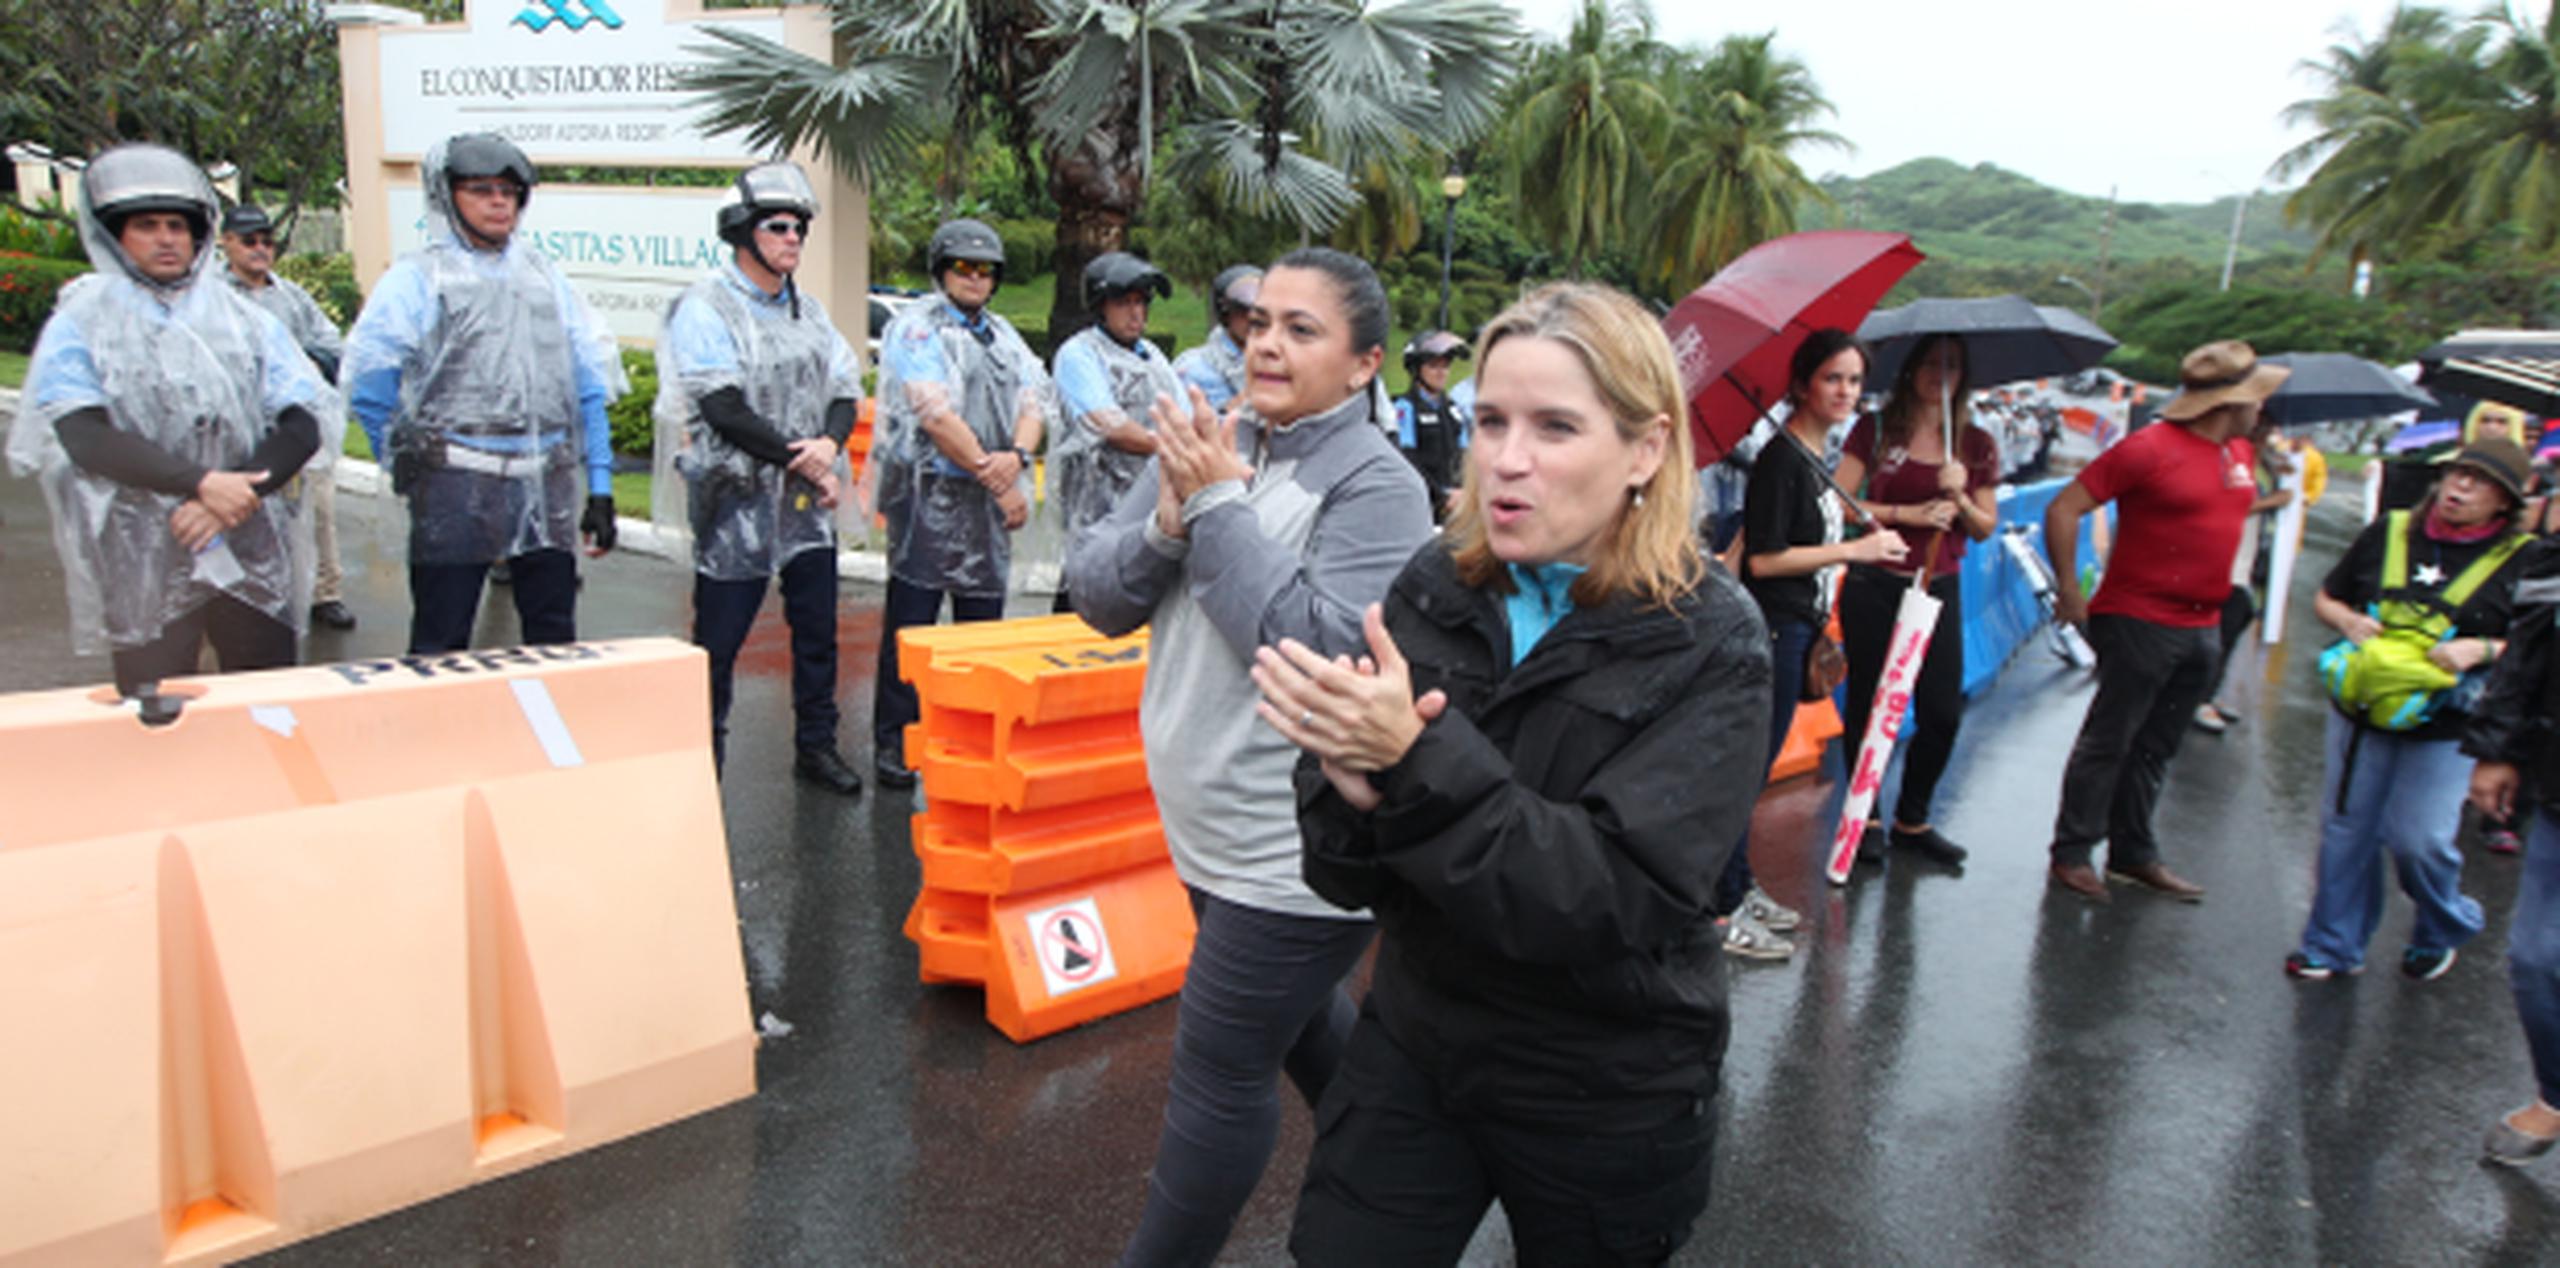 La alcaldesa de San Juan, Carmen Yulín Cruz, y Clarisa López, hija del prisionero político Oscar López, participaron activamente de la manifestación. (alex.figueroa@gfrmedia.com)